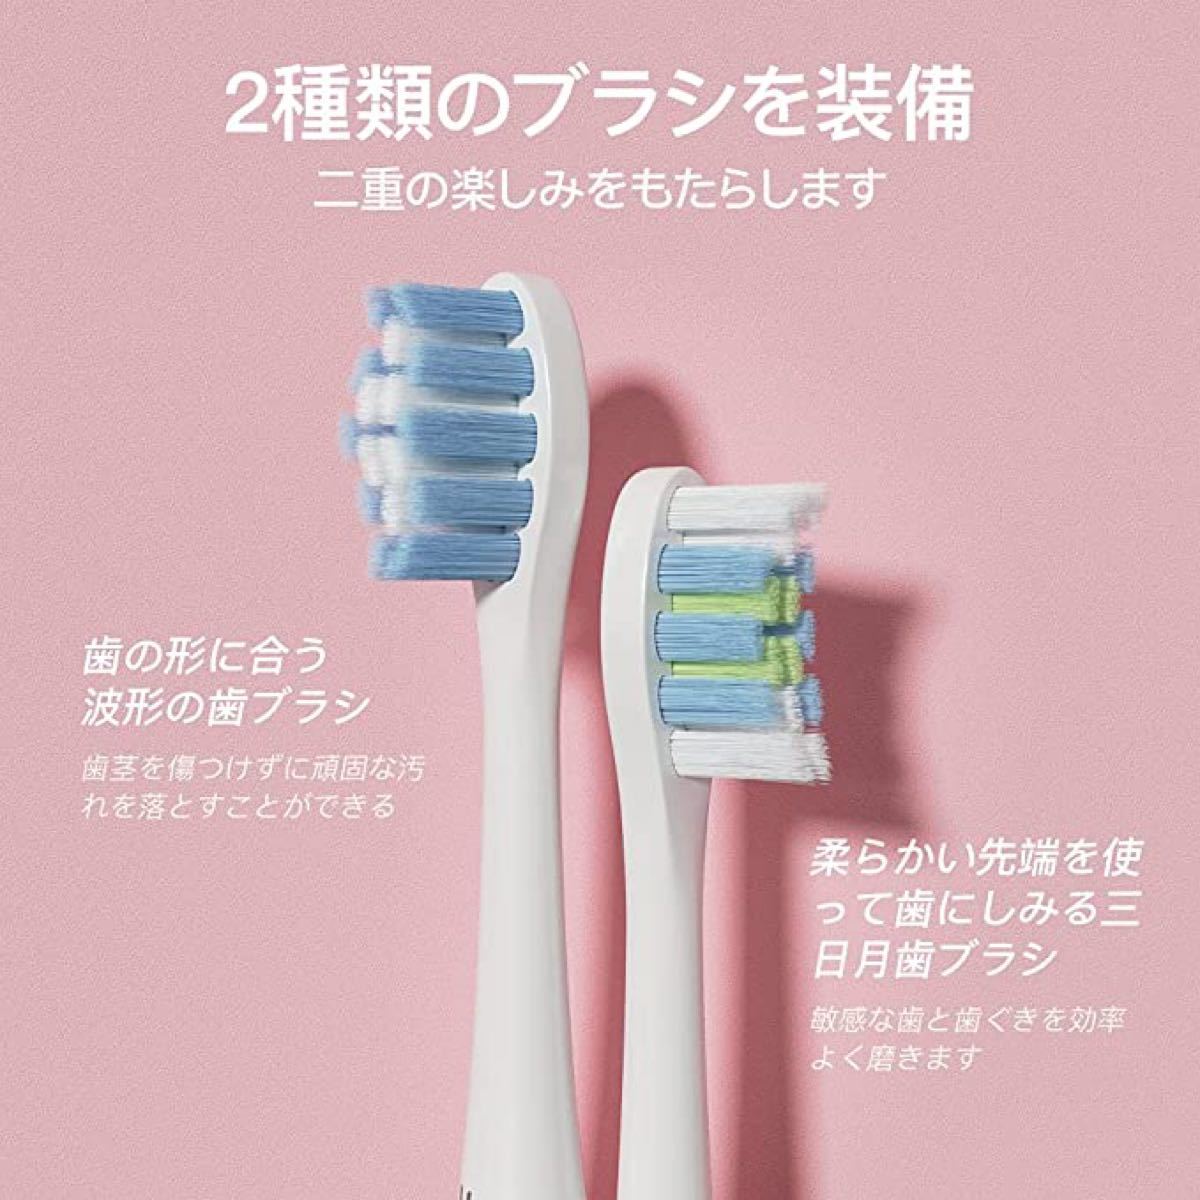 ★新品★電動歯ブラシ 音波歯ブラシ USB充電式  2種類のブラシヘッド